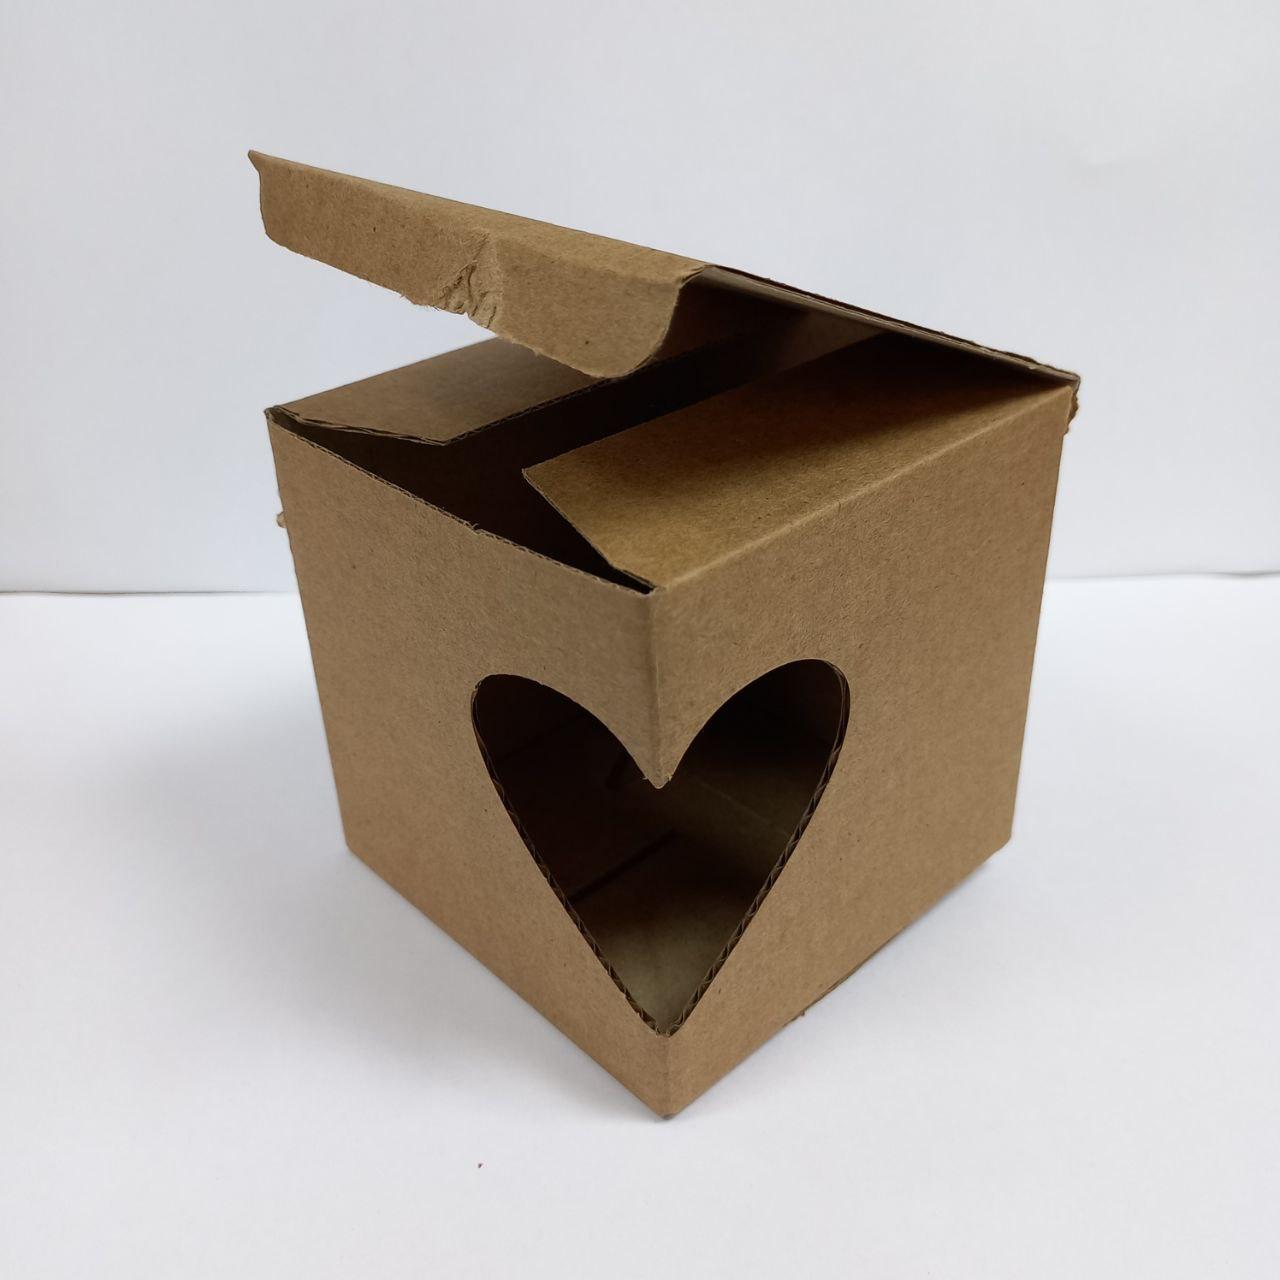 Коробка из гафрир. картона "Сердечко"